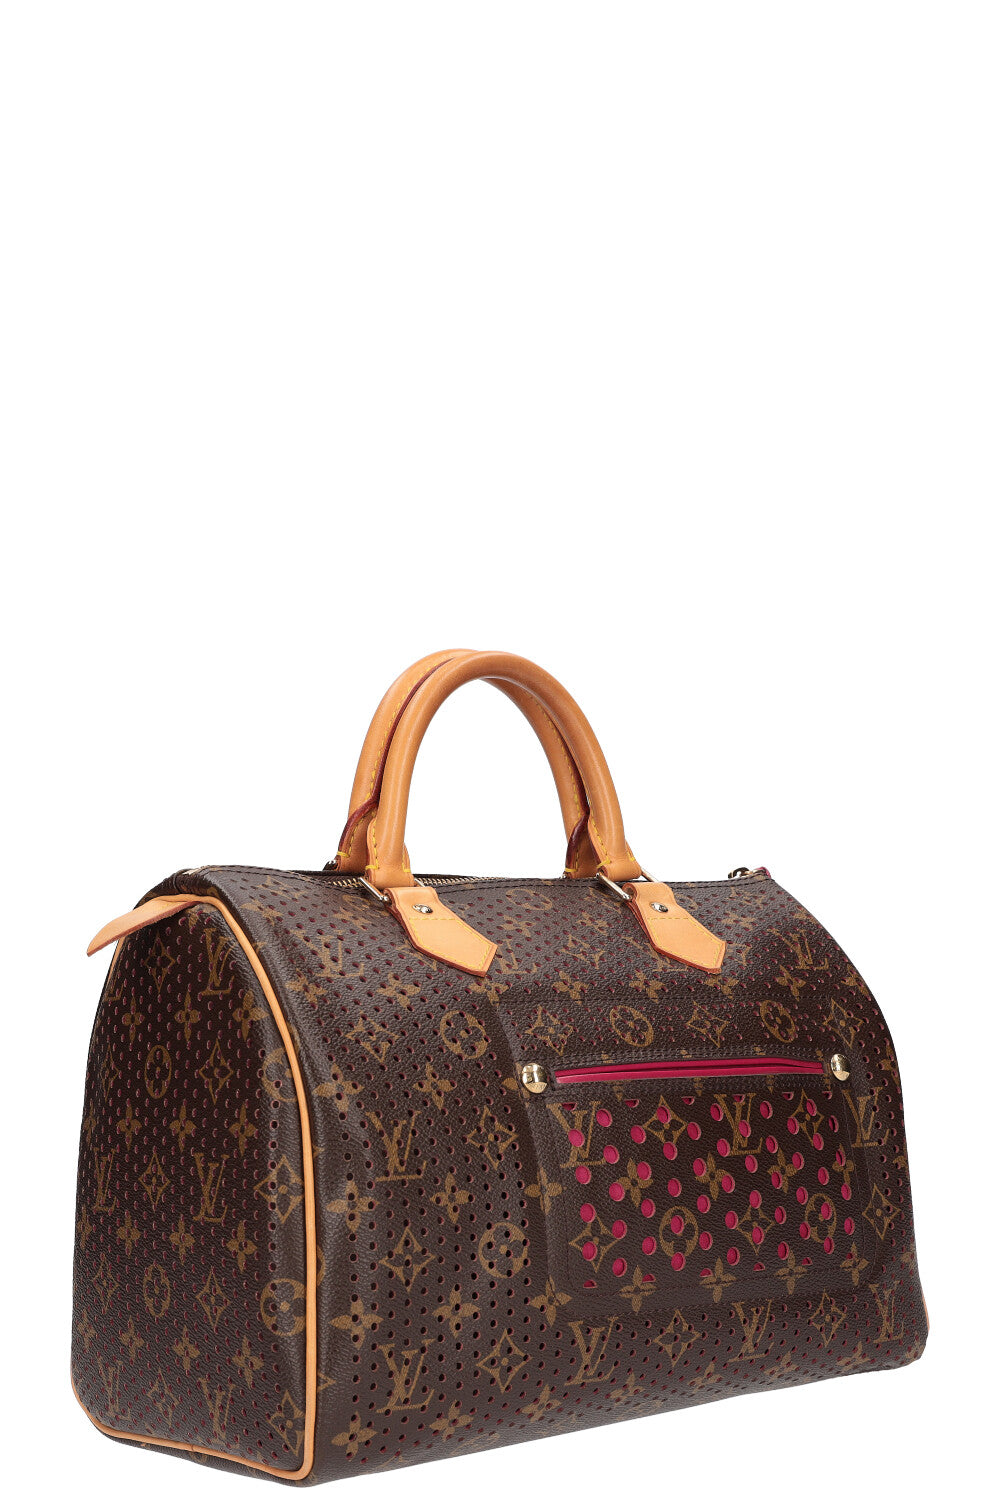 Louis Vuitton Edición limitada - signos de uso - $6,000.00